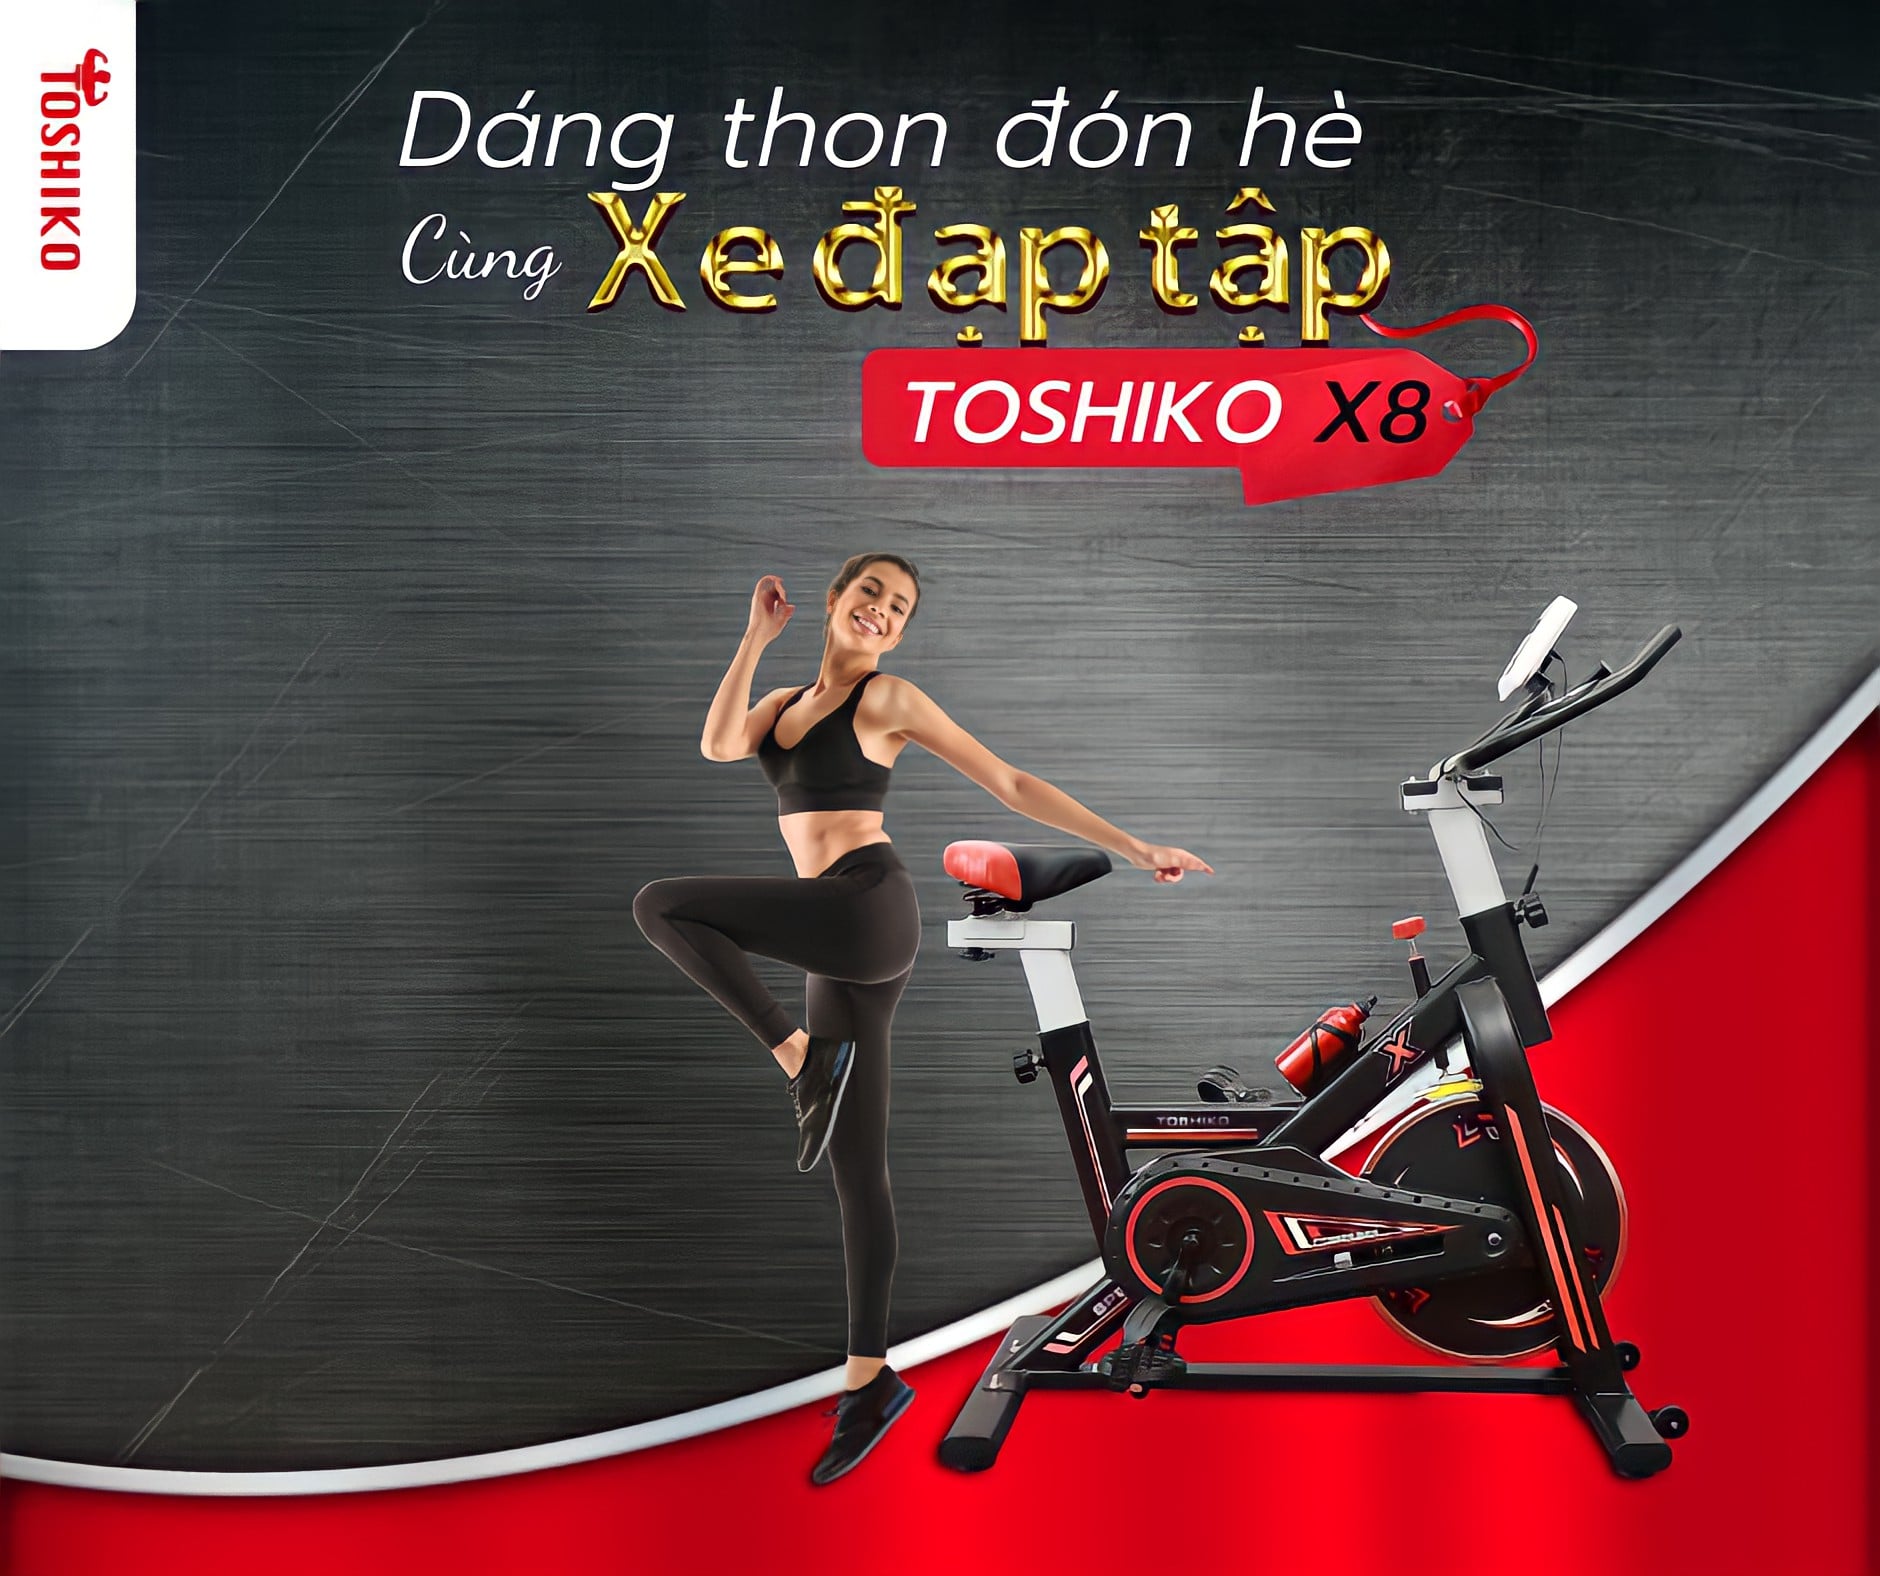 Với đánh giá xe đạp tập thể dục Toshiko X8, có nên mua sản phẩm này không?